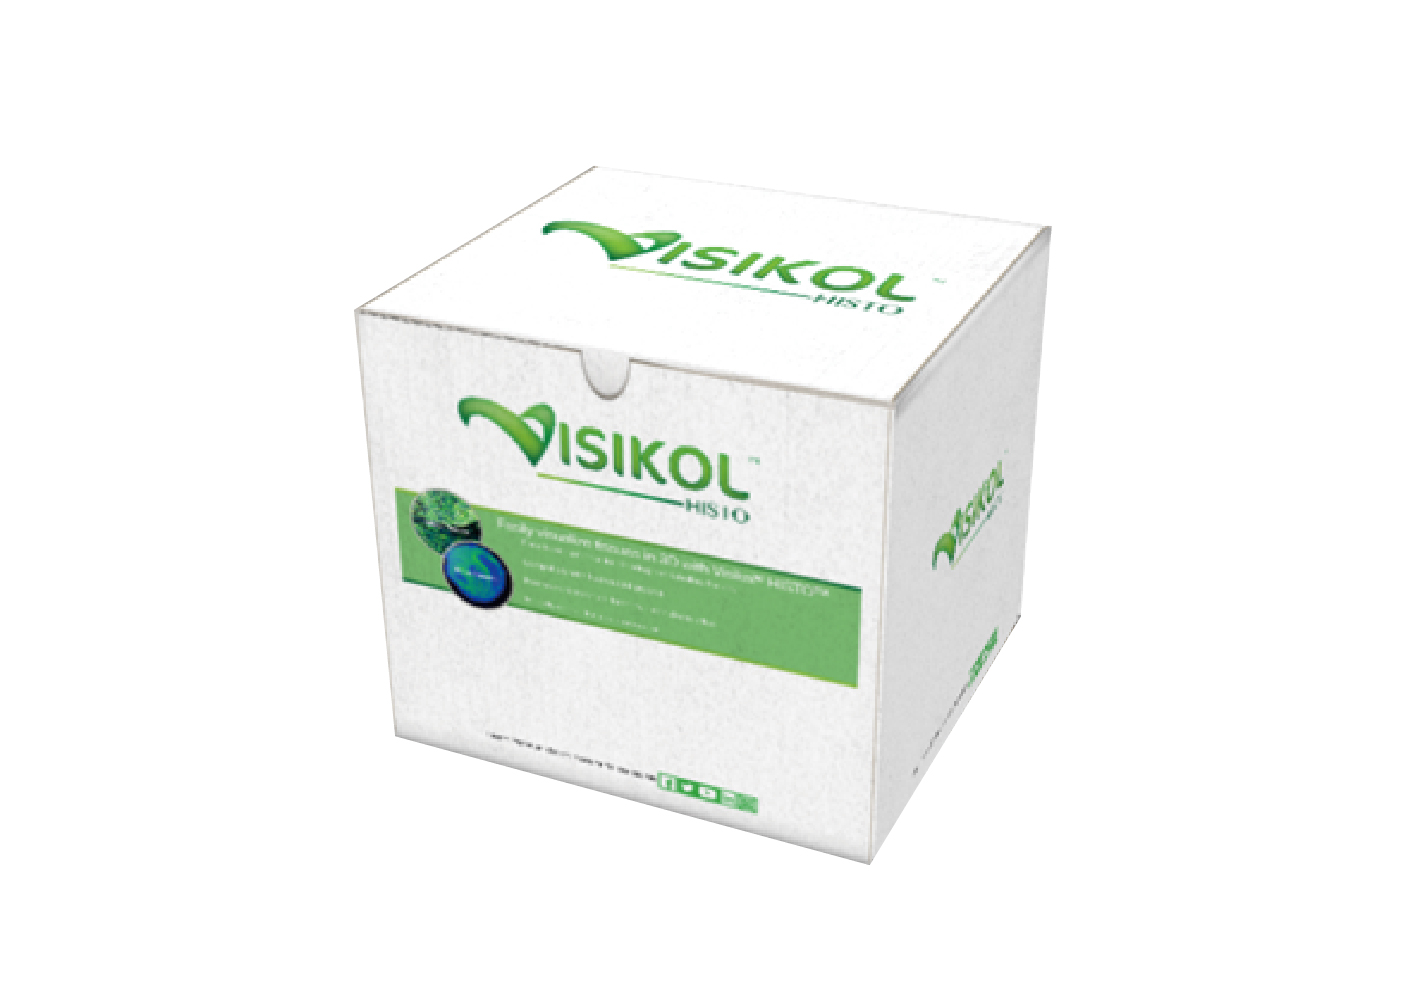 Visikol TOX 骨骼透明化试剂